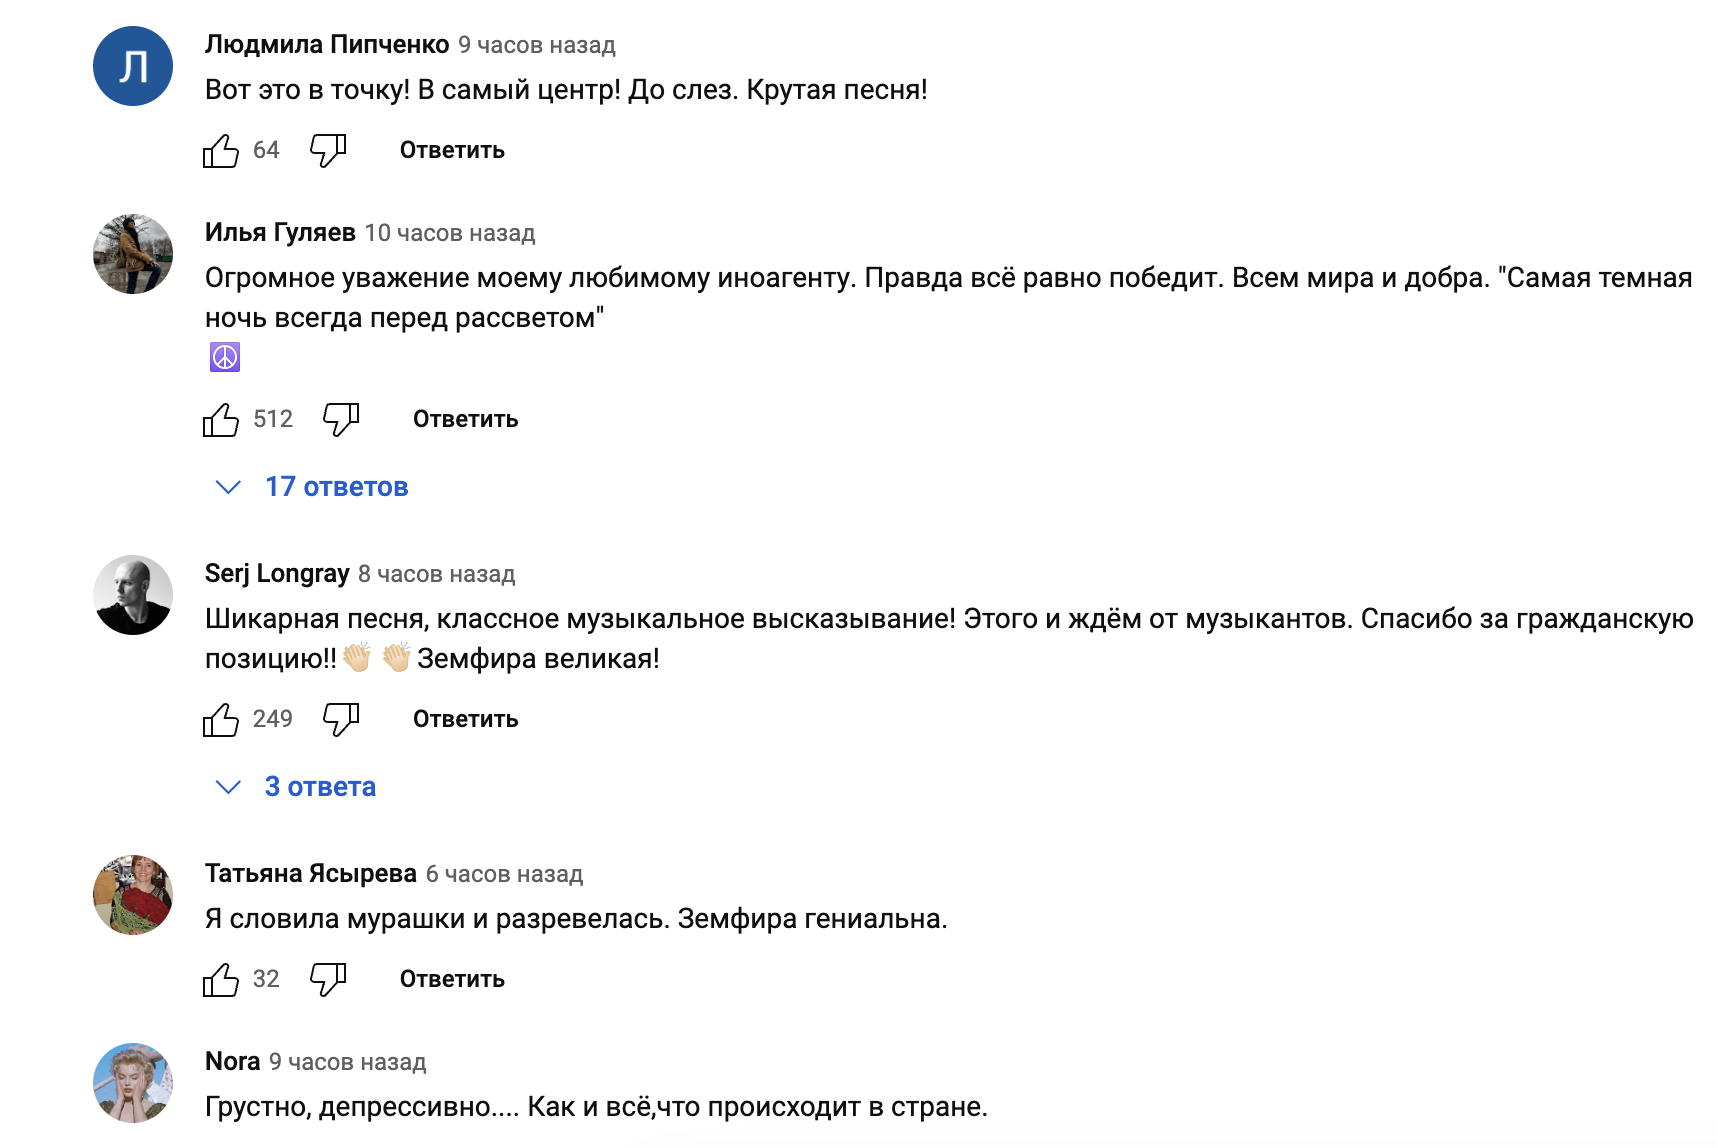 Земфира в нецензурной песне осудила Россию за попытку навязать любовь к родине: научим целовать ее ботинки и подошвы